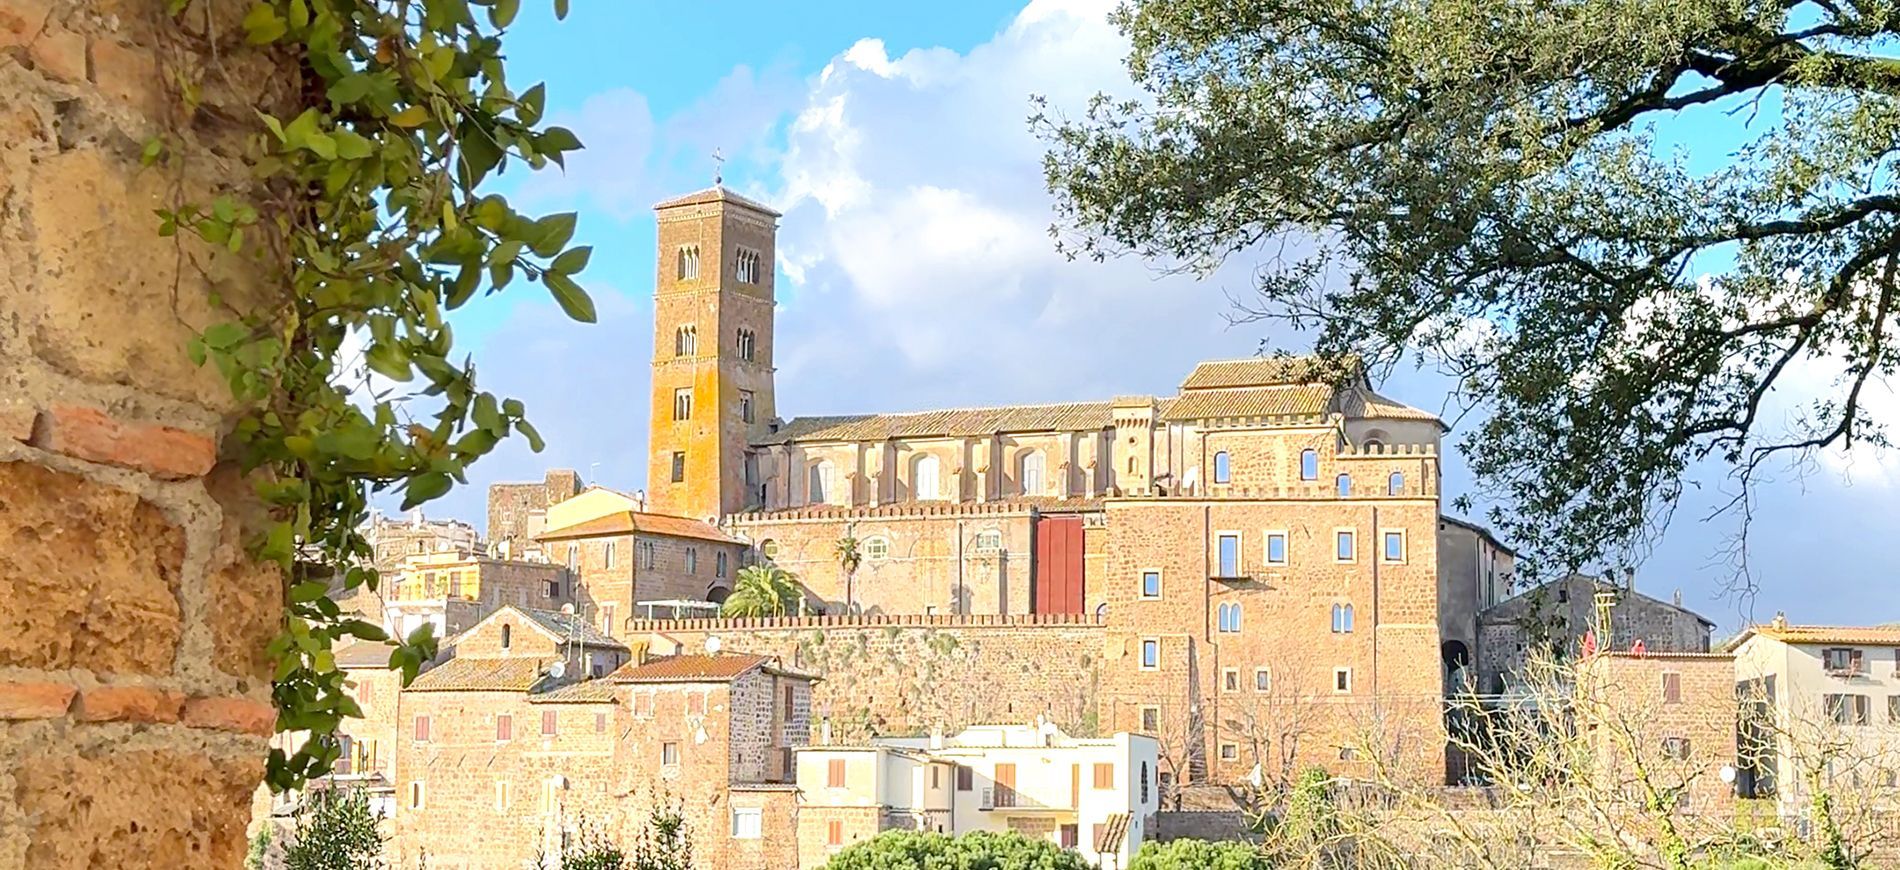 Il borgo della Tuscia e uno dei più antichi del Lazio: la città di Sutri